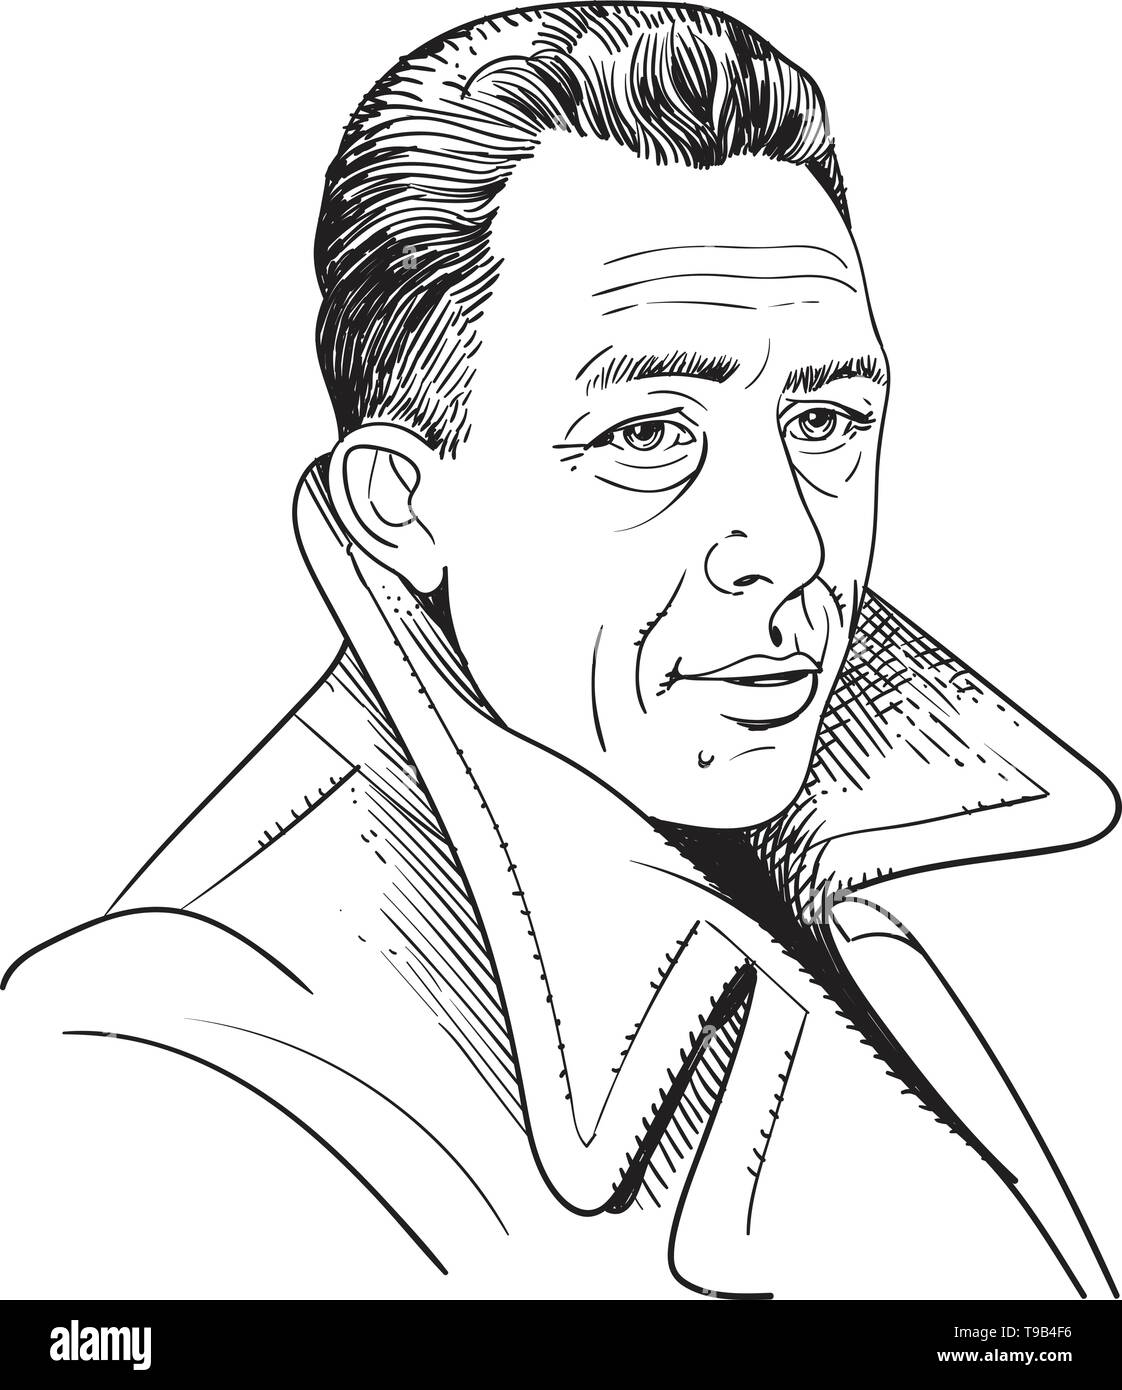 Albert Camus war ein französischer Philosoph, Autor und Journalist, Line Art Portrait. Vektor Stock Vektor